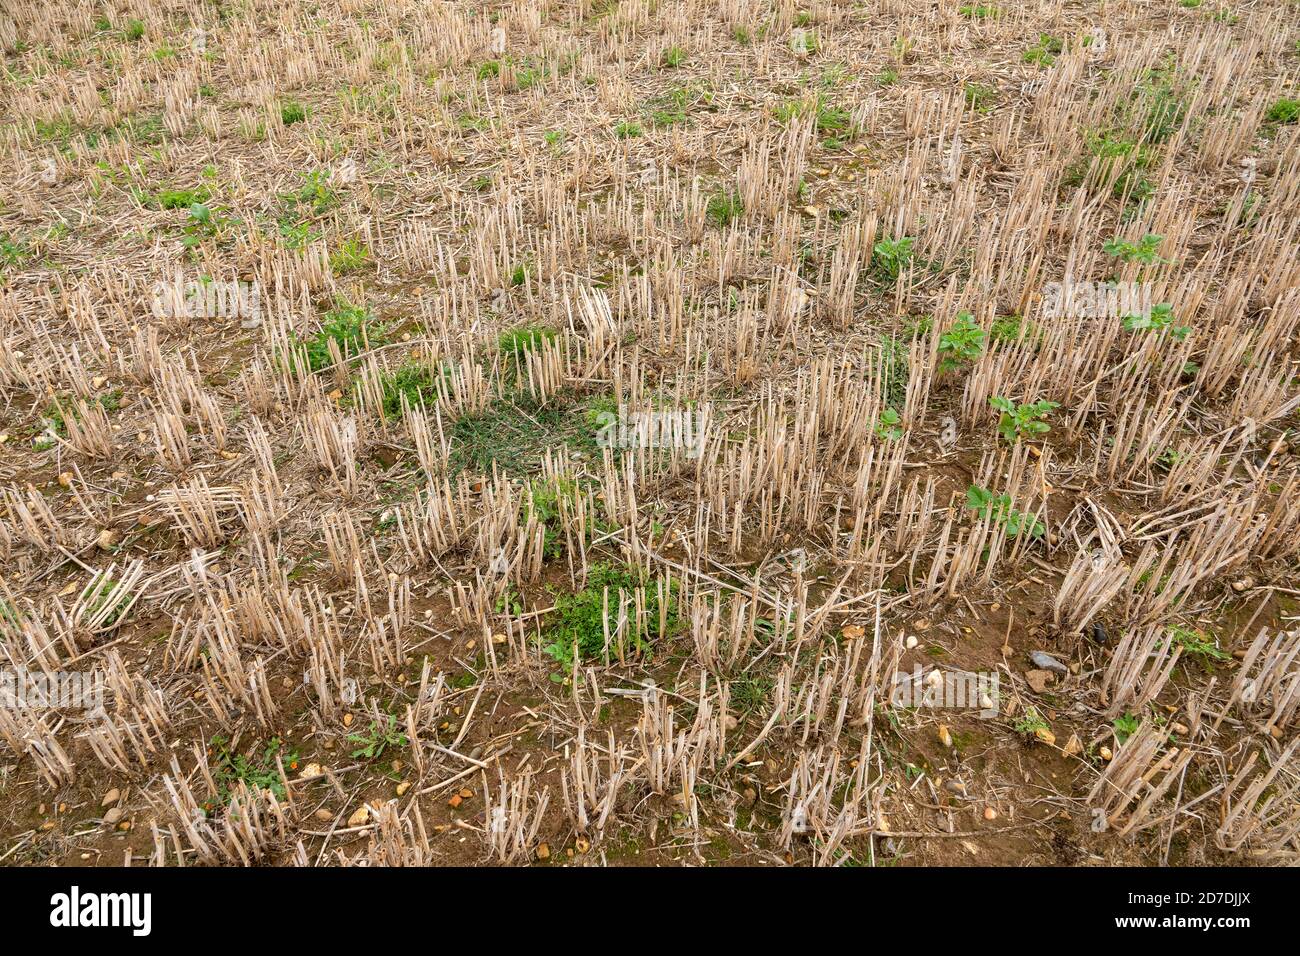 Superficie de rastrojo de cultivo en condiciones de sequía Foto de stock